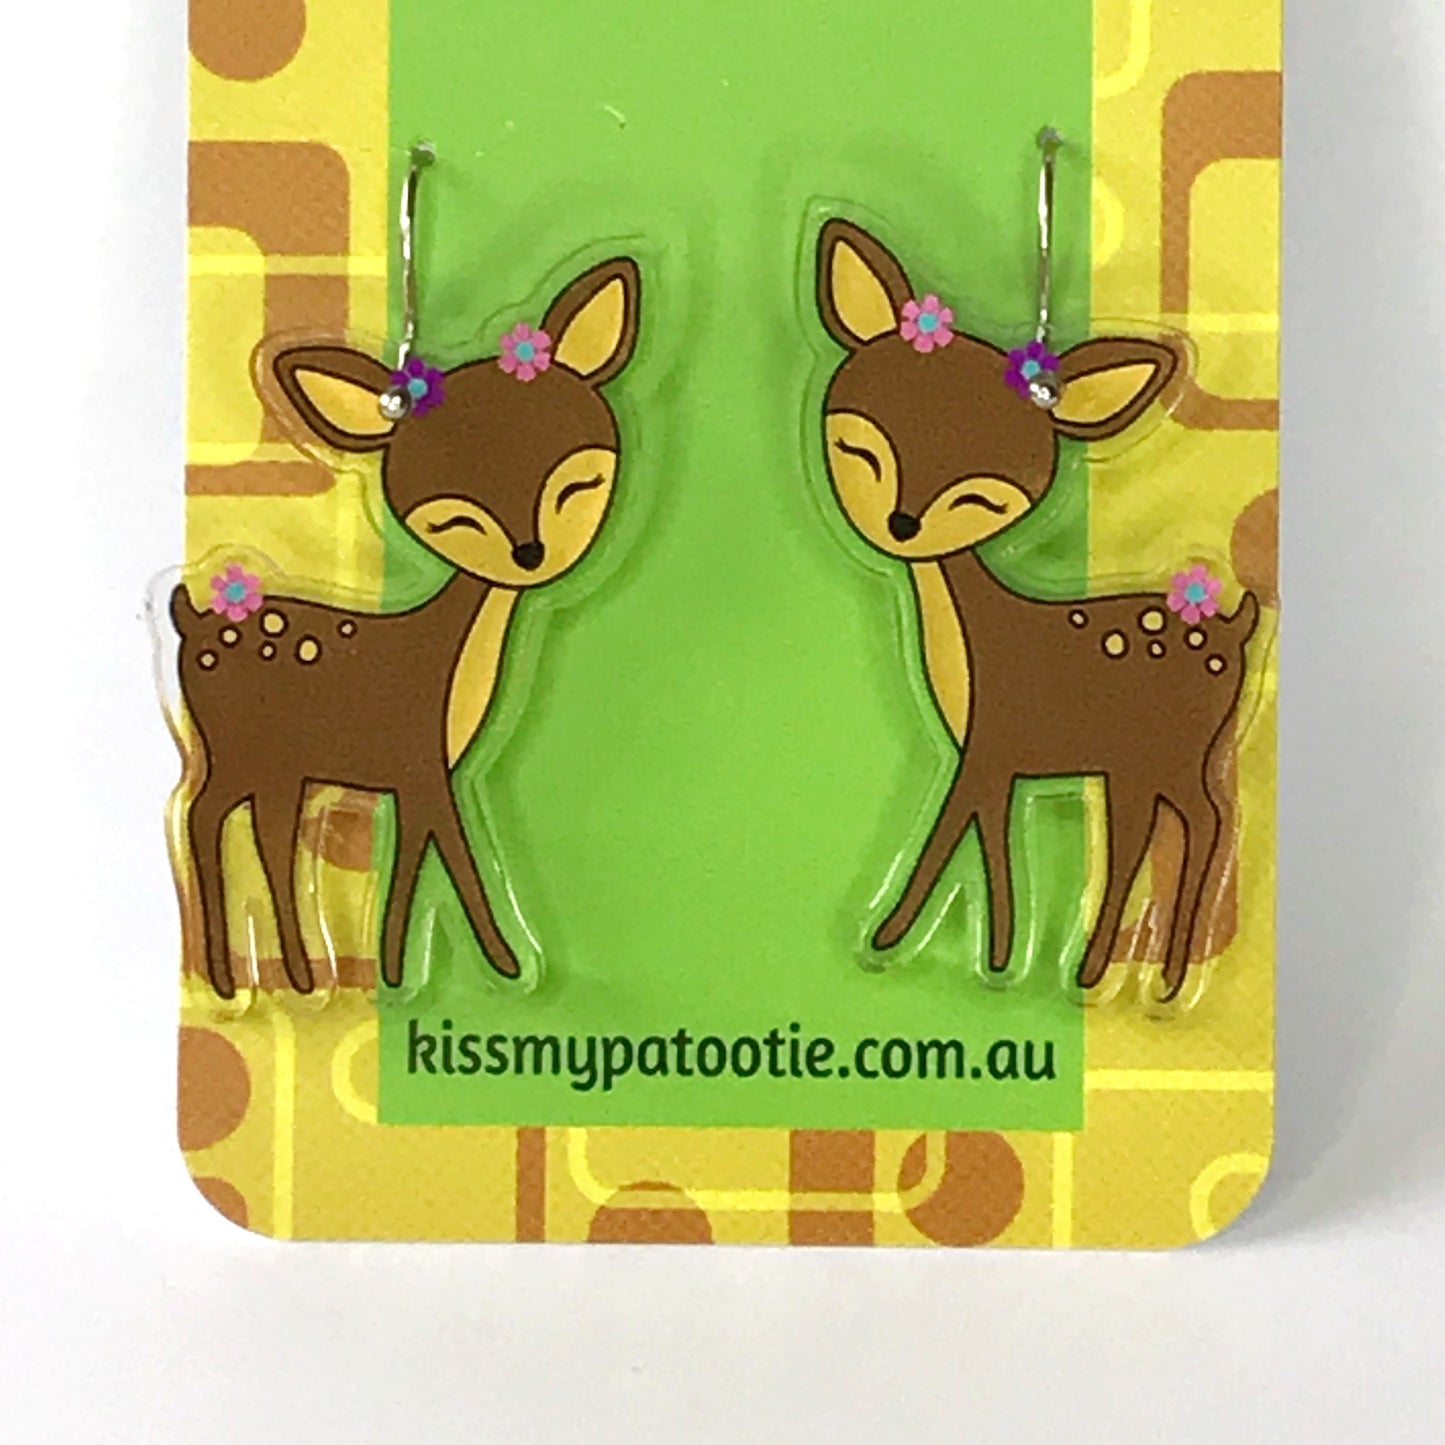 Woodland deer acrylic earrings - 100% recycled acrylic